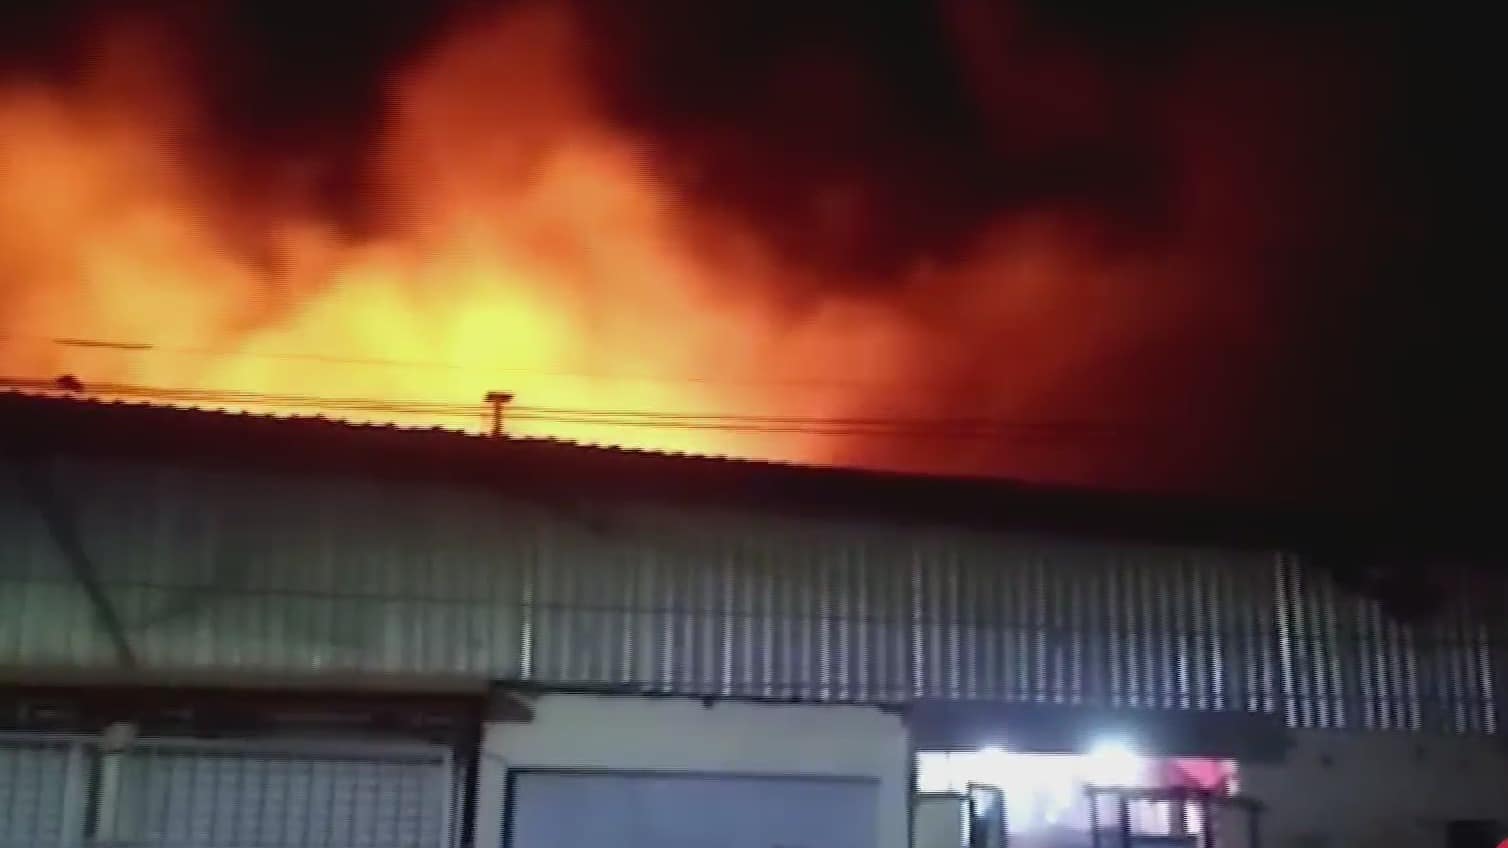 incendio consume 40 locales en central de abasto en comitan